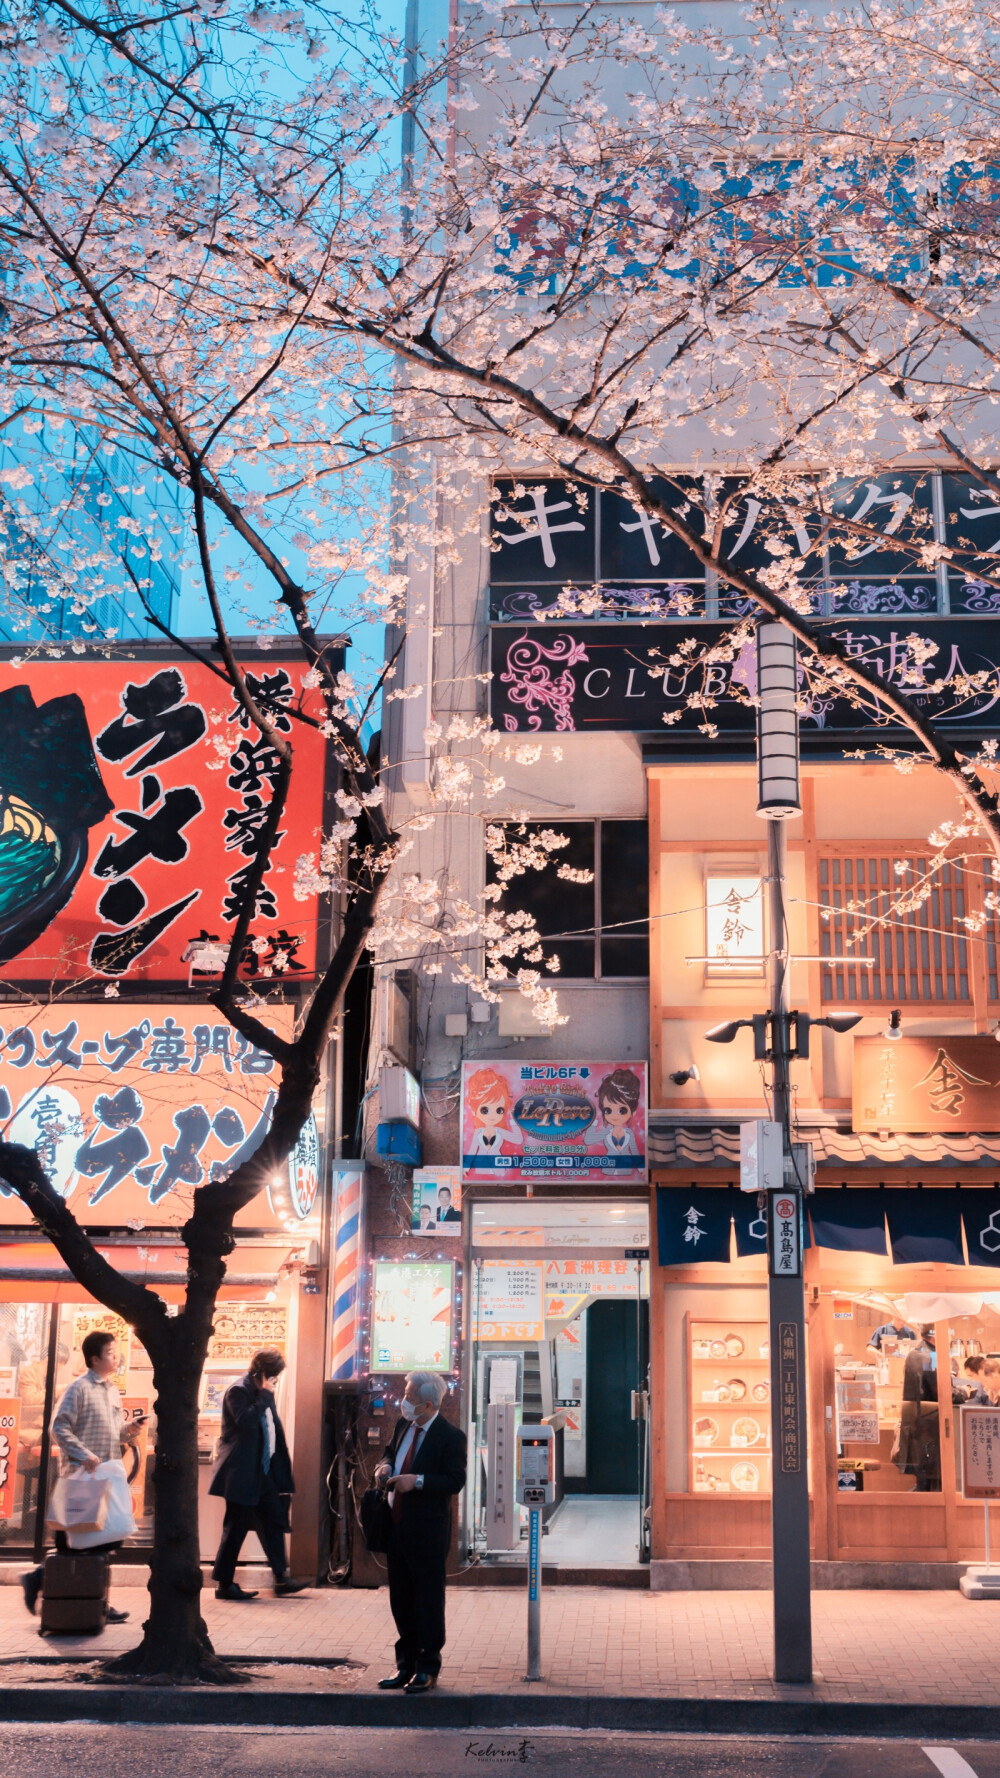 壁纸 • 日本街景